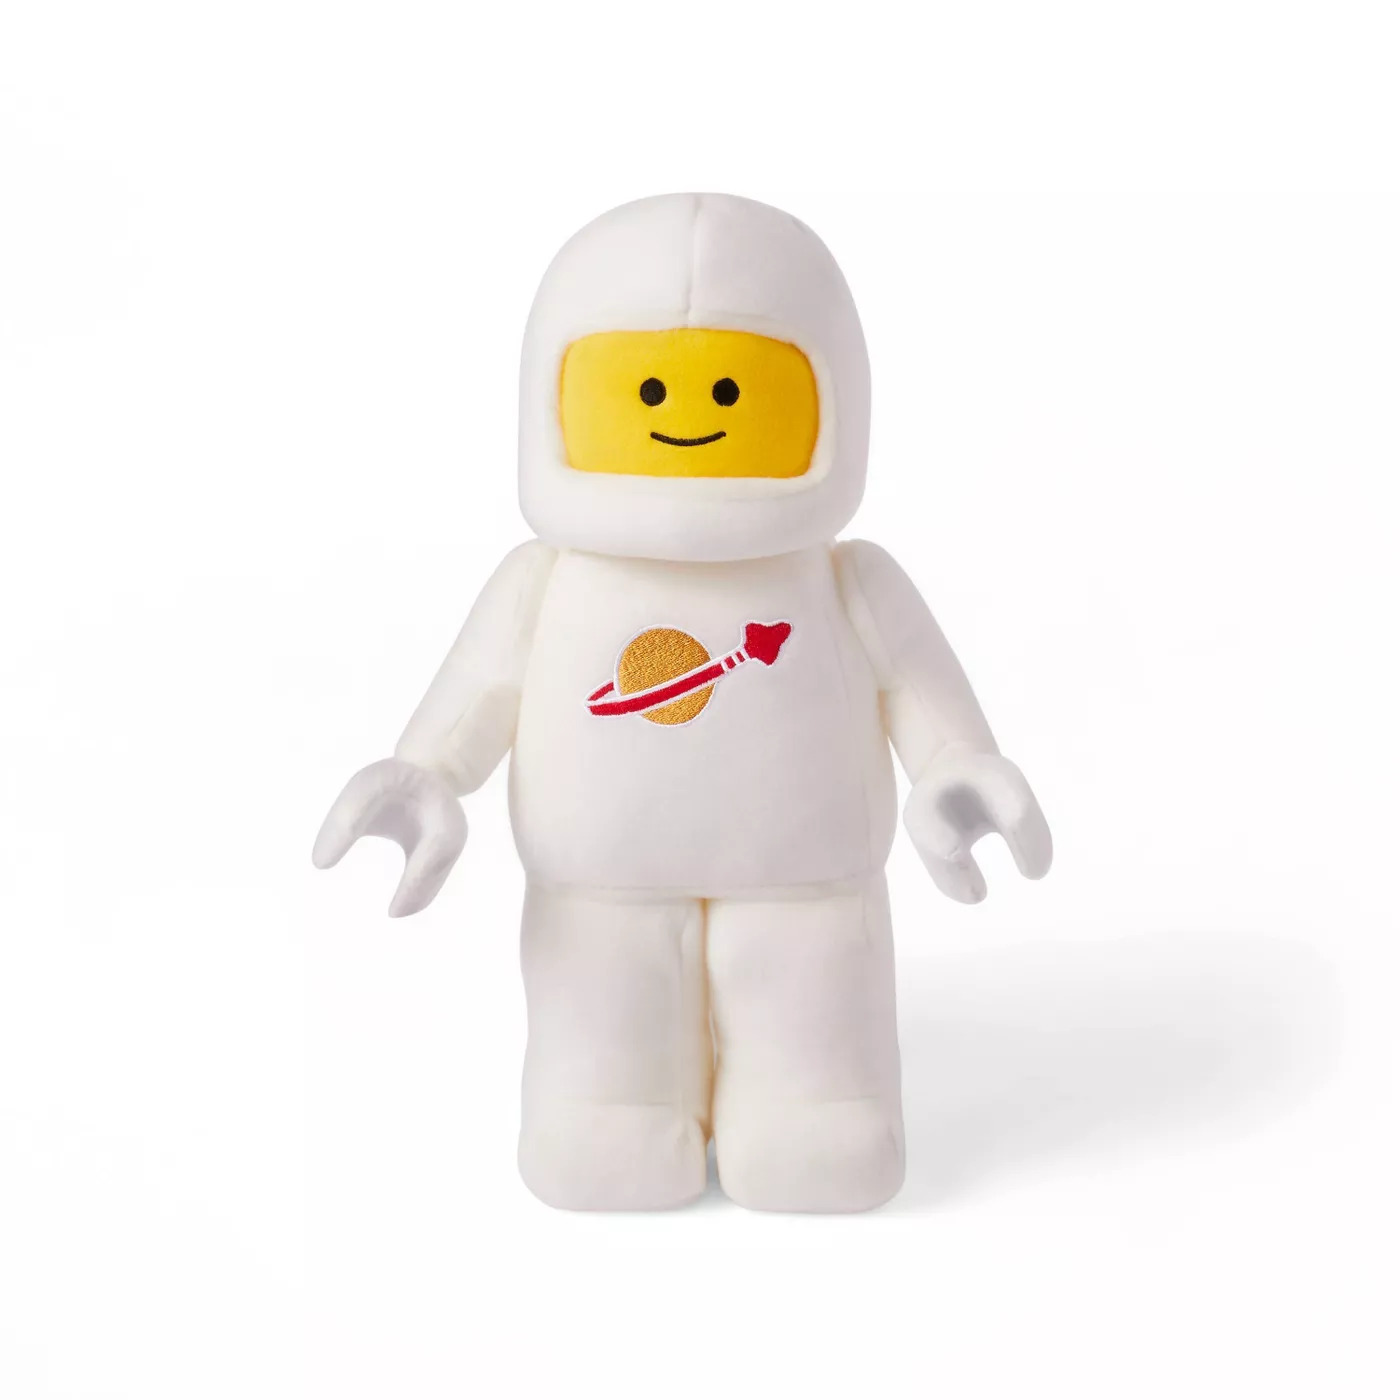 LEGO Collection x Target Minifigure Astronaut Plush Blue - FW21 - DE